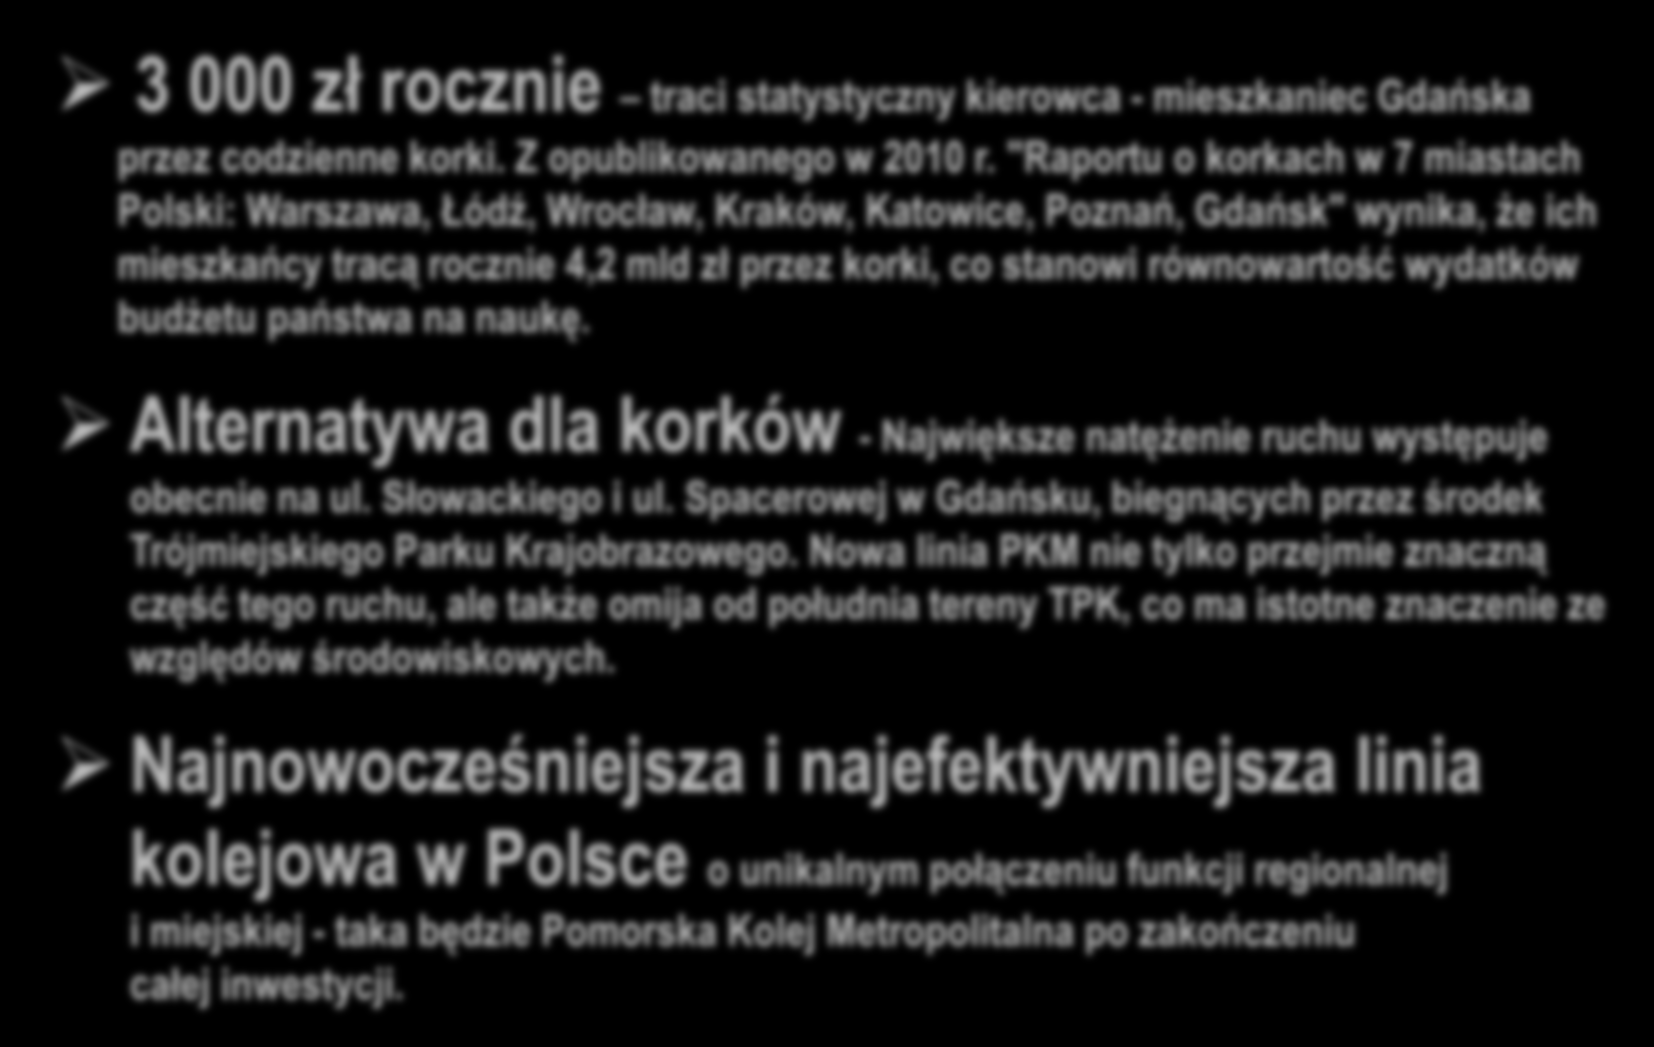 WPŁYW NA ŚRODOWISKO 3 000 zł rocznie traci statystyczny kierowca - mieszkaniec Gdańska przez codzienne korki. Z opublikowanego w 2010 r.